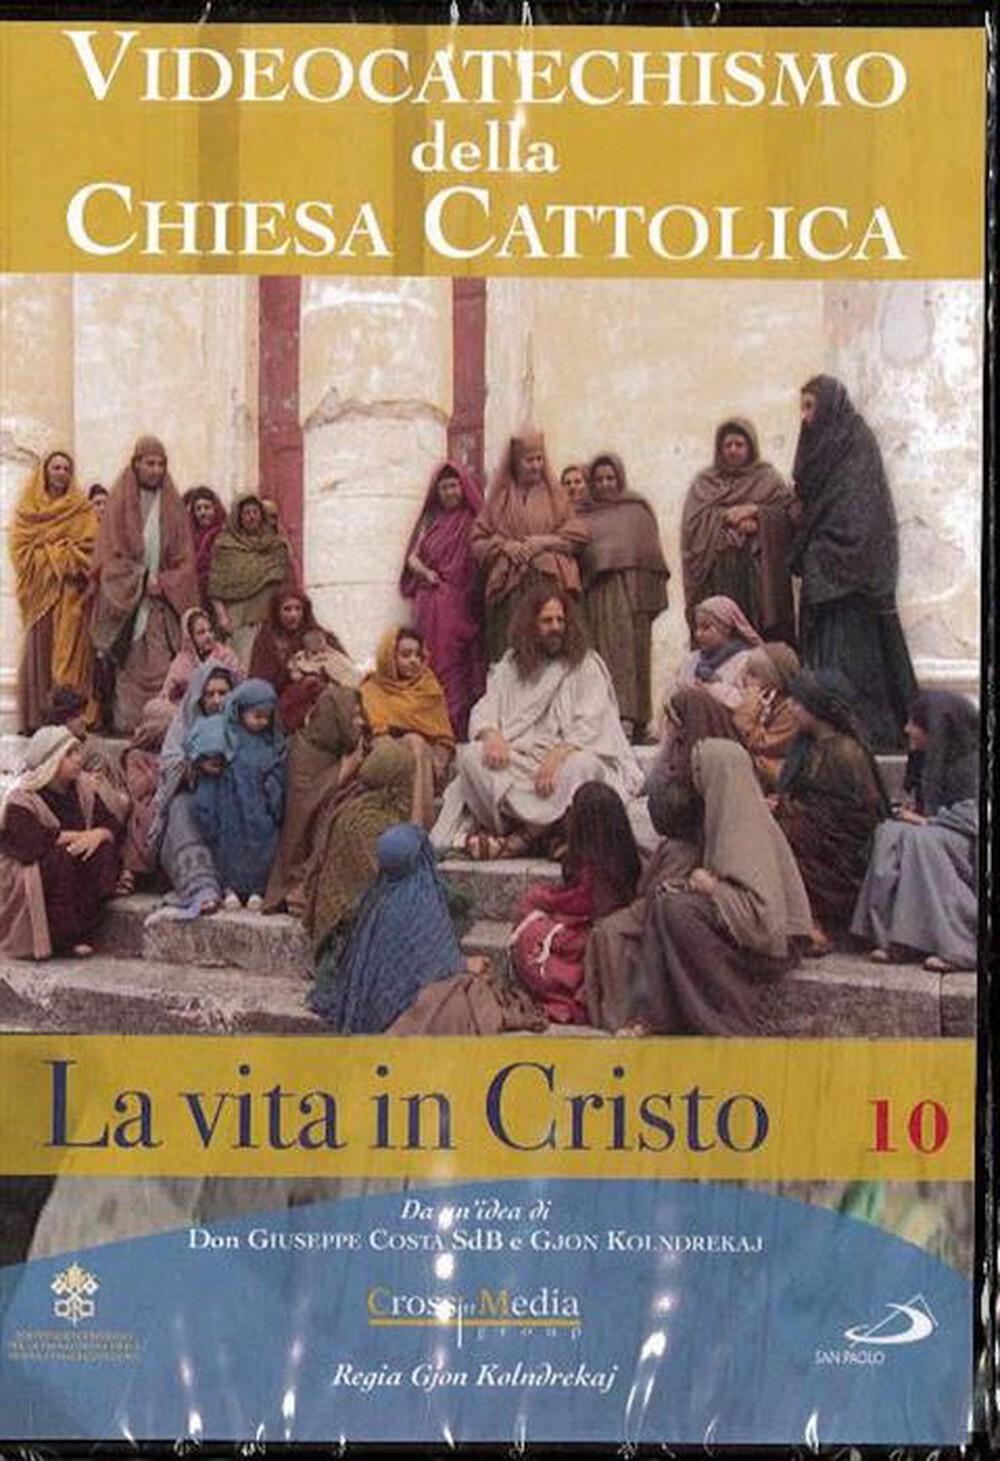 "SAN PAOLO - Videocatechismo #10 - Vita Di Cristo #01"